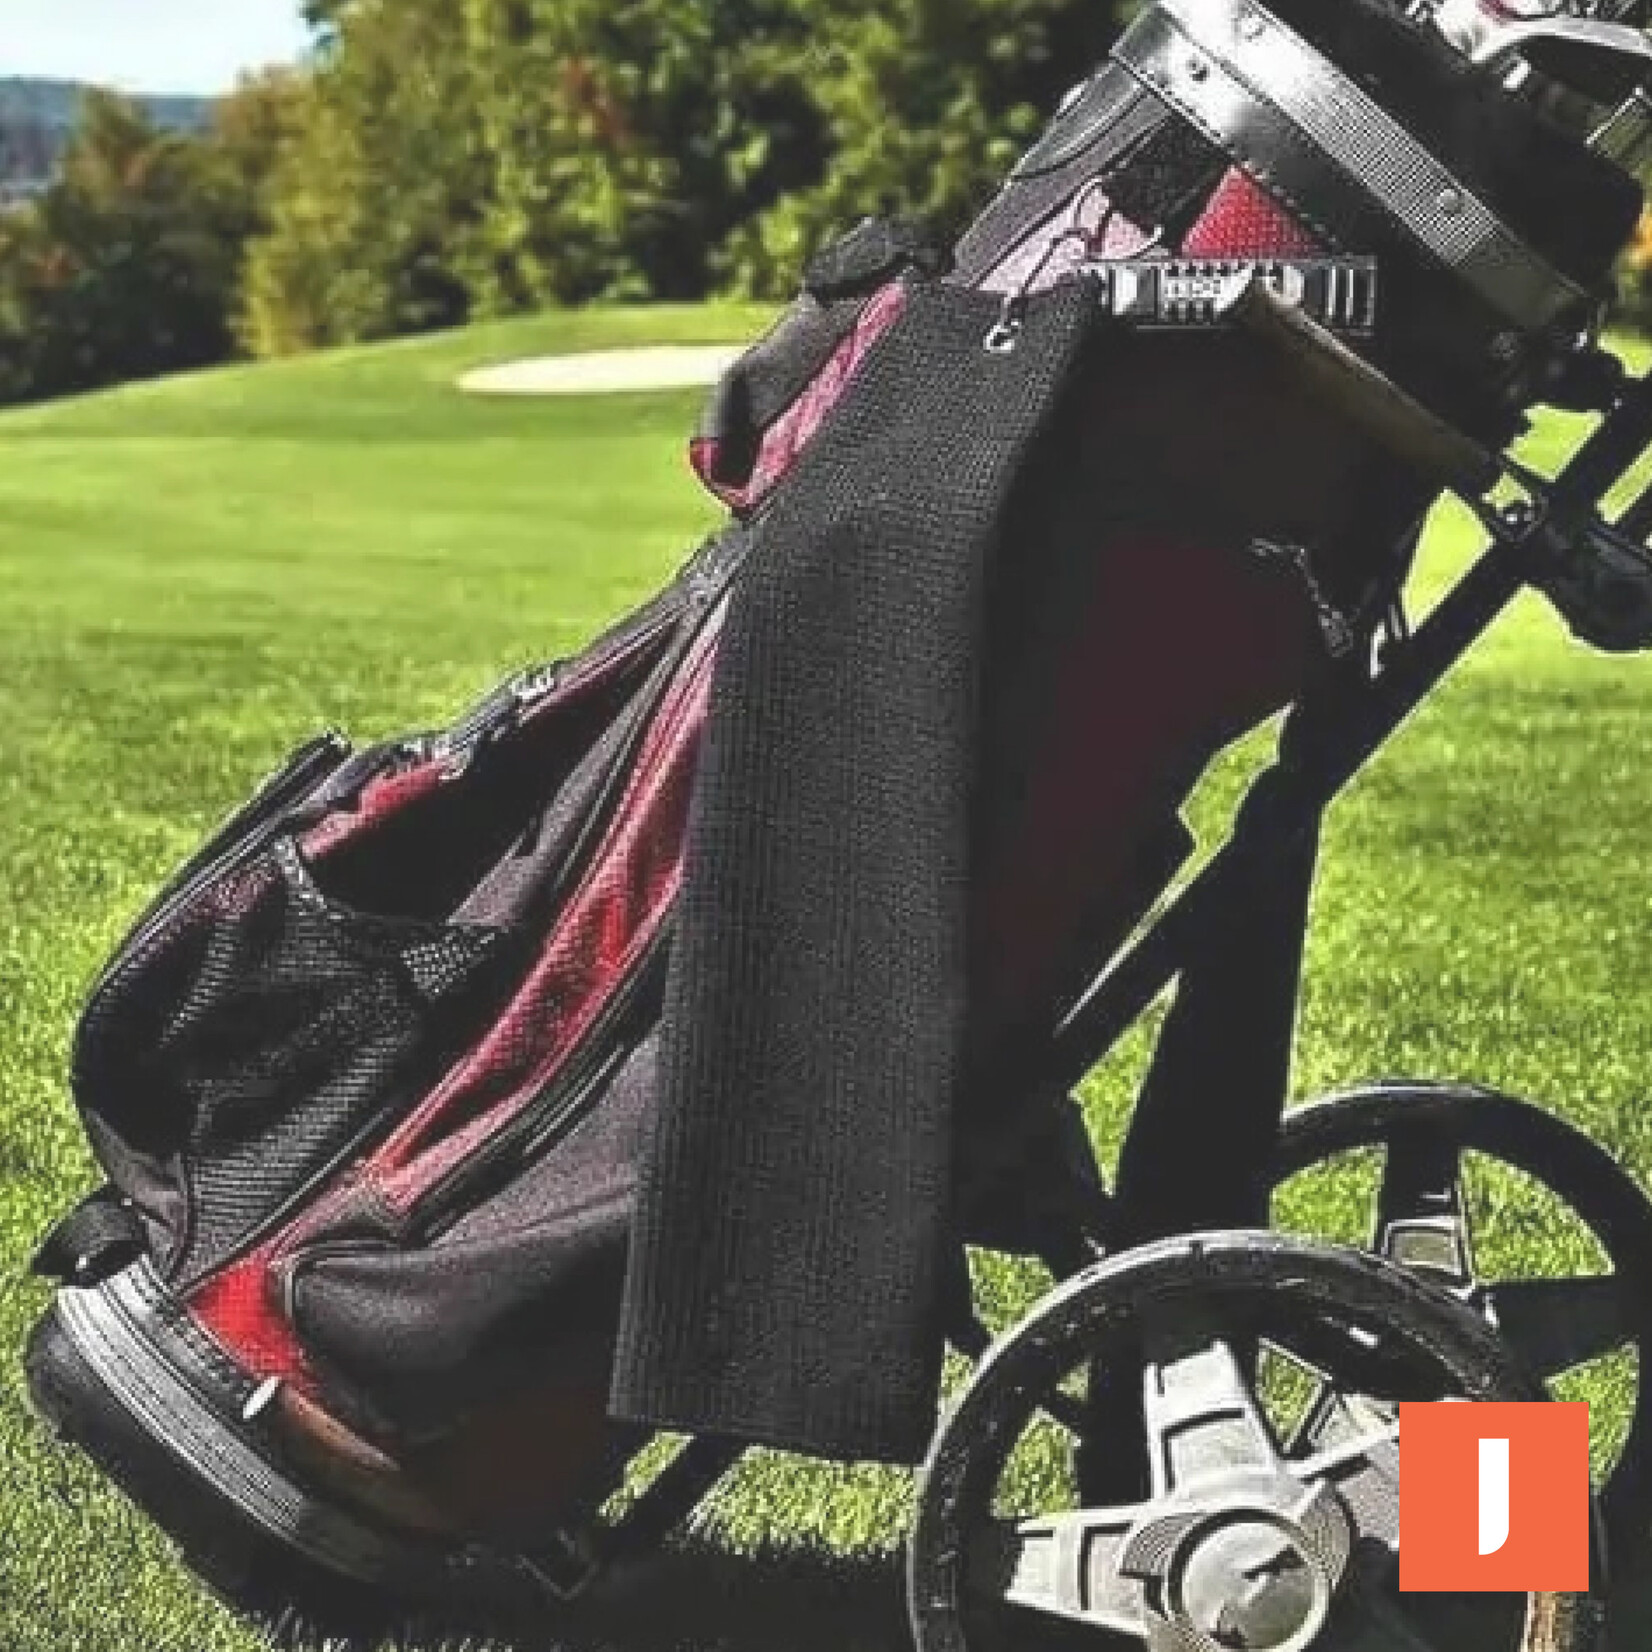 Jobber Golf Handdoek - golf accessoires - Sporthanddoek - set 3 stuks